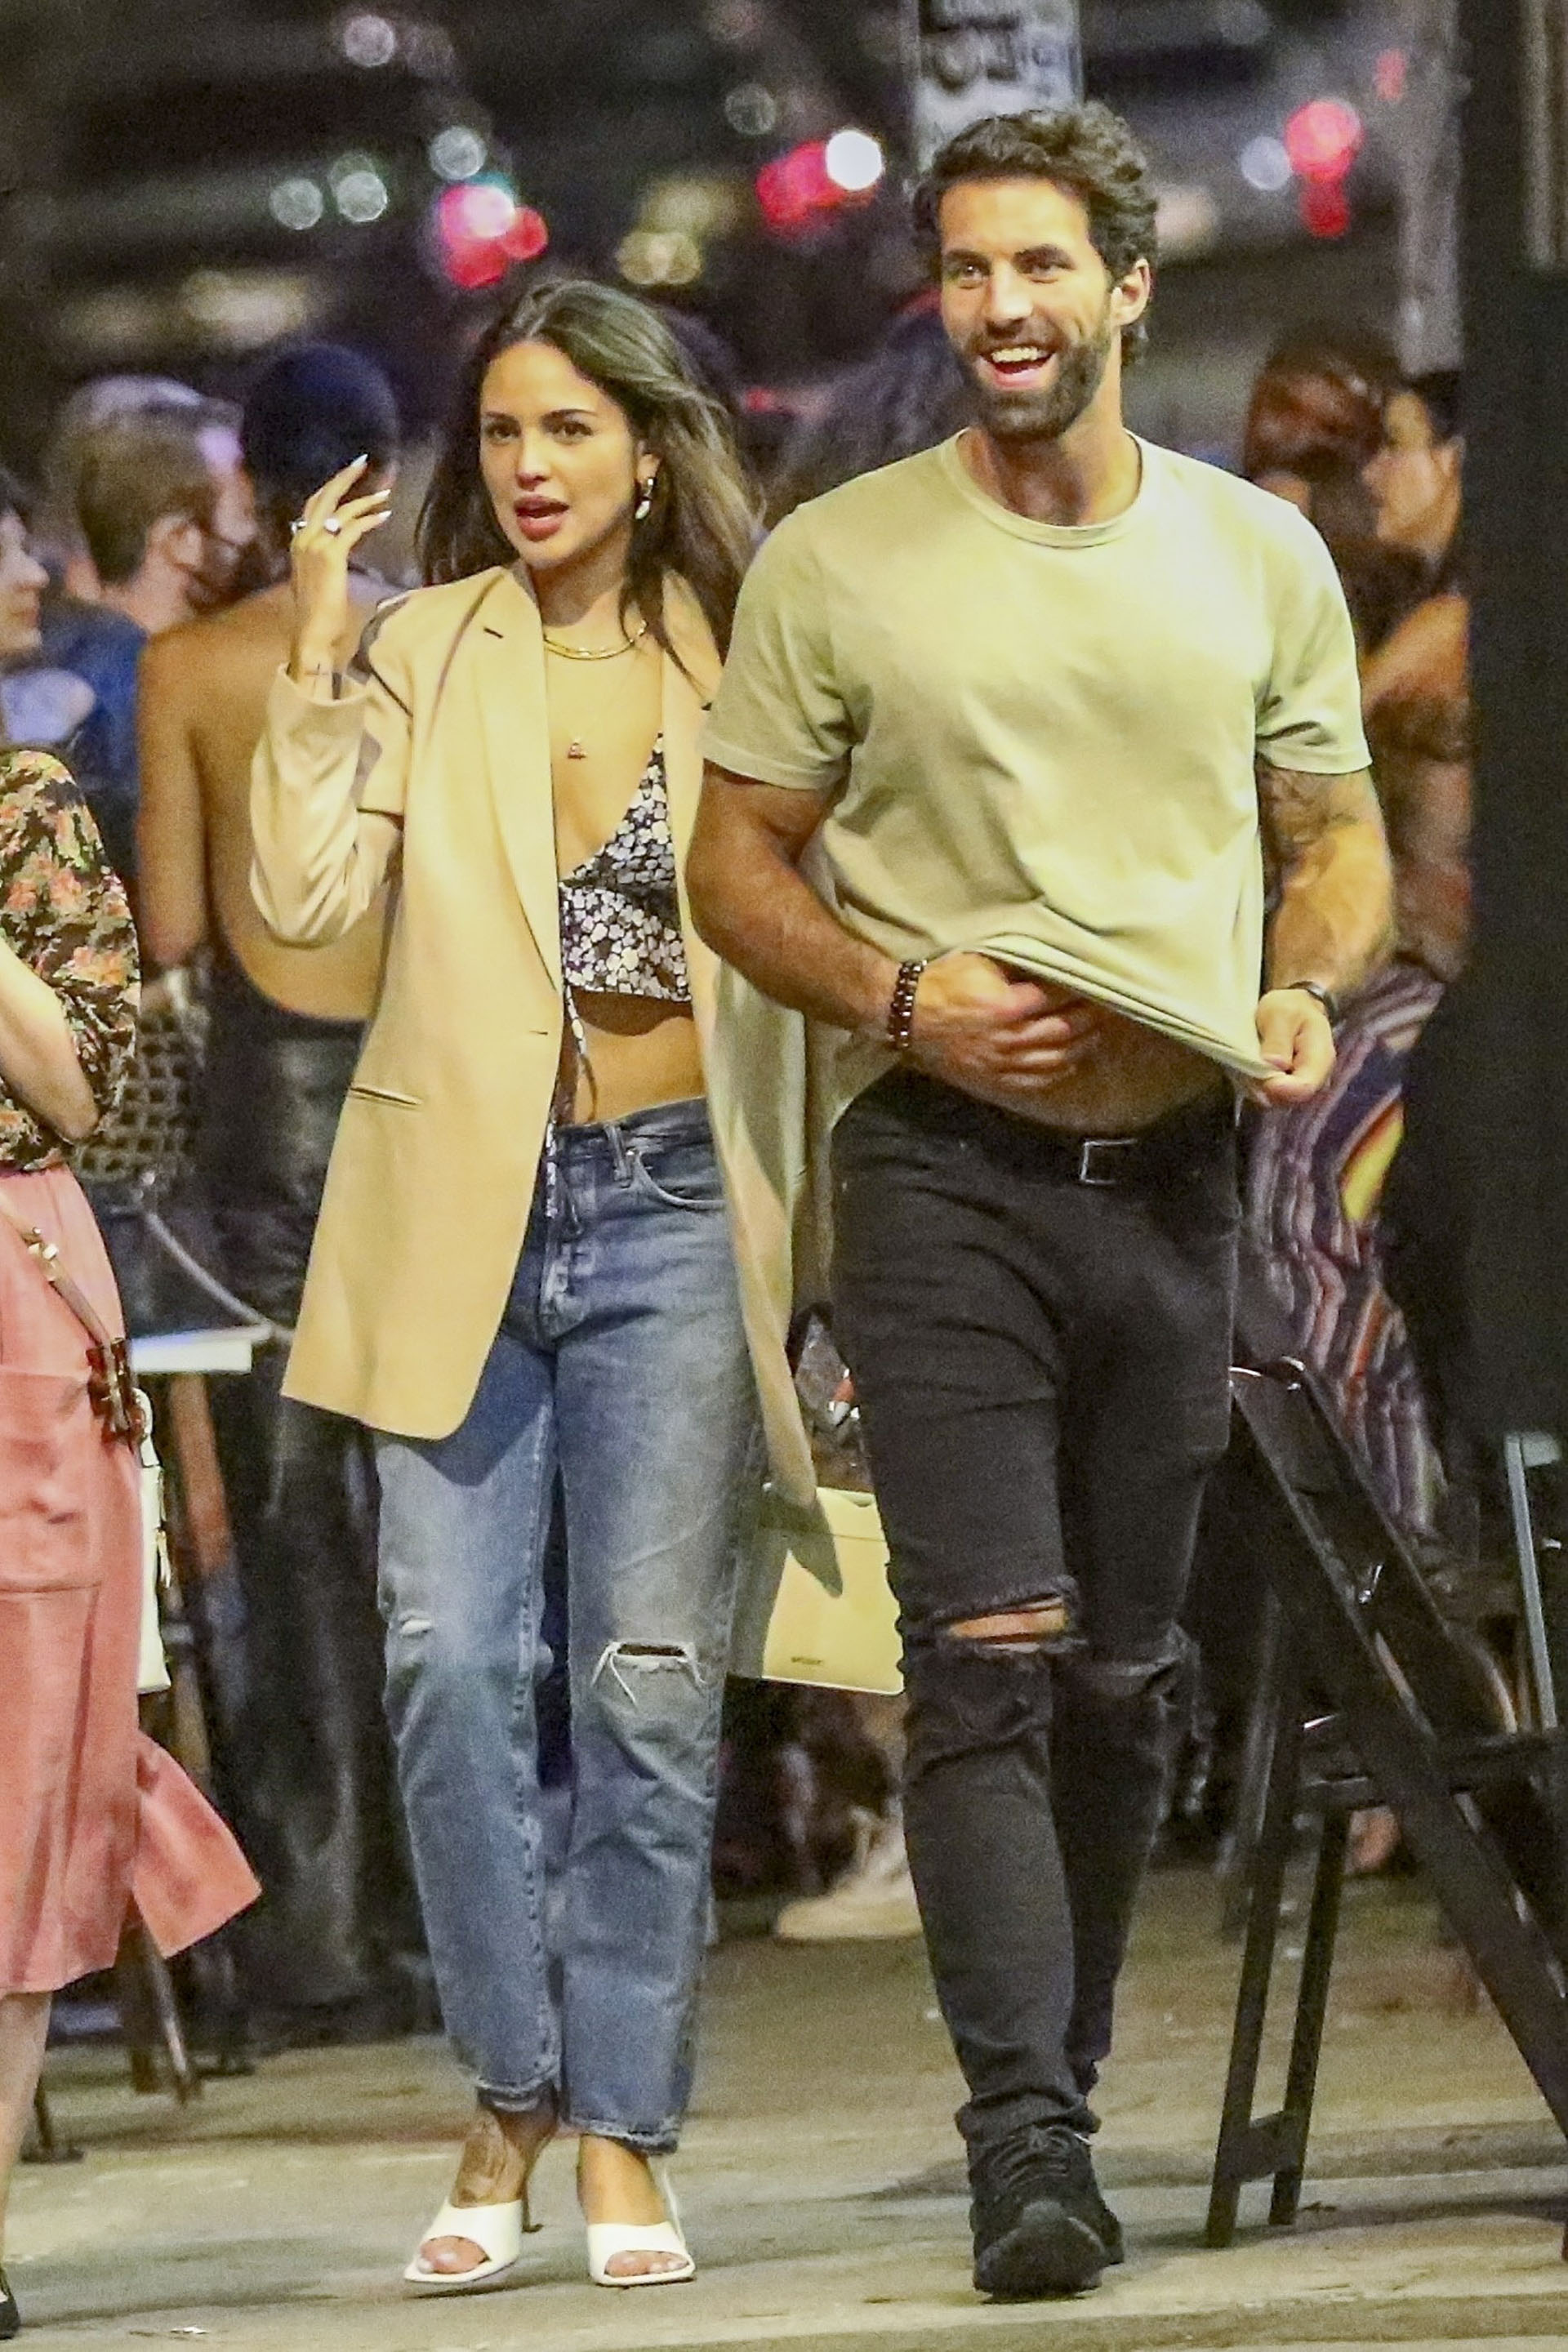 Cita romántica. Eiza Gonzalez y Paul Rabil compartieron una divertida noche en West Hollywood. La actriz lució un jean, un top estampado y un saco oversize, mientras que el deportista vistió un jean negro y una remera color verde (Fotos: The Grosby Group)